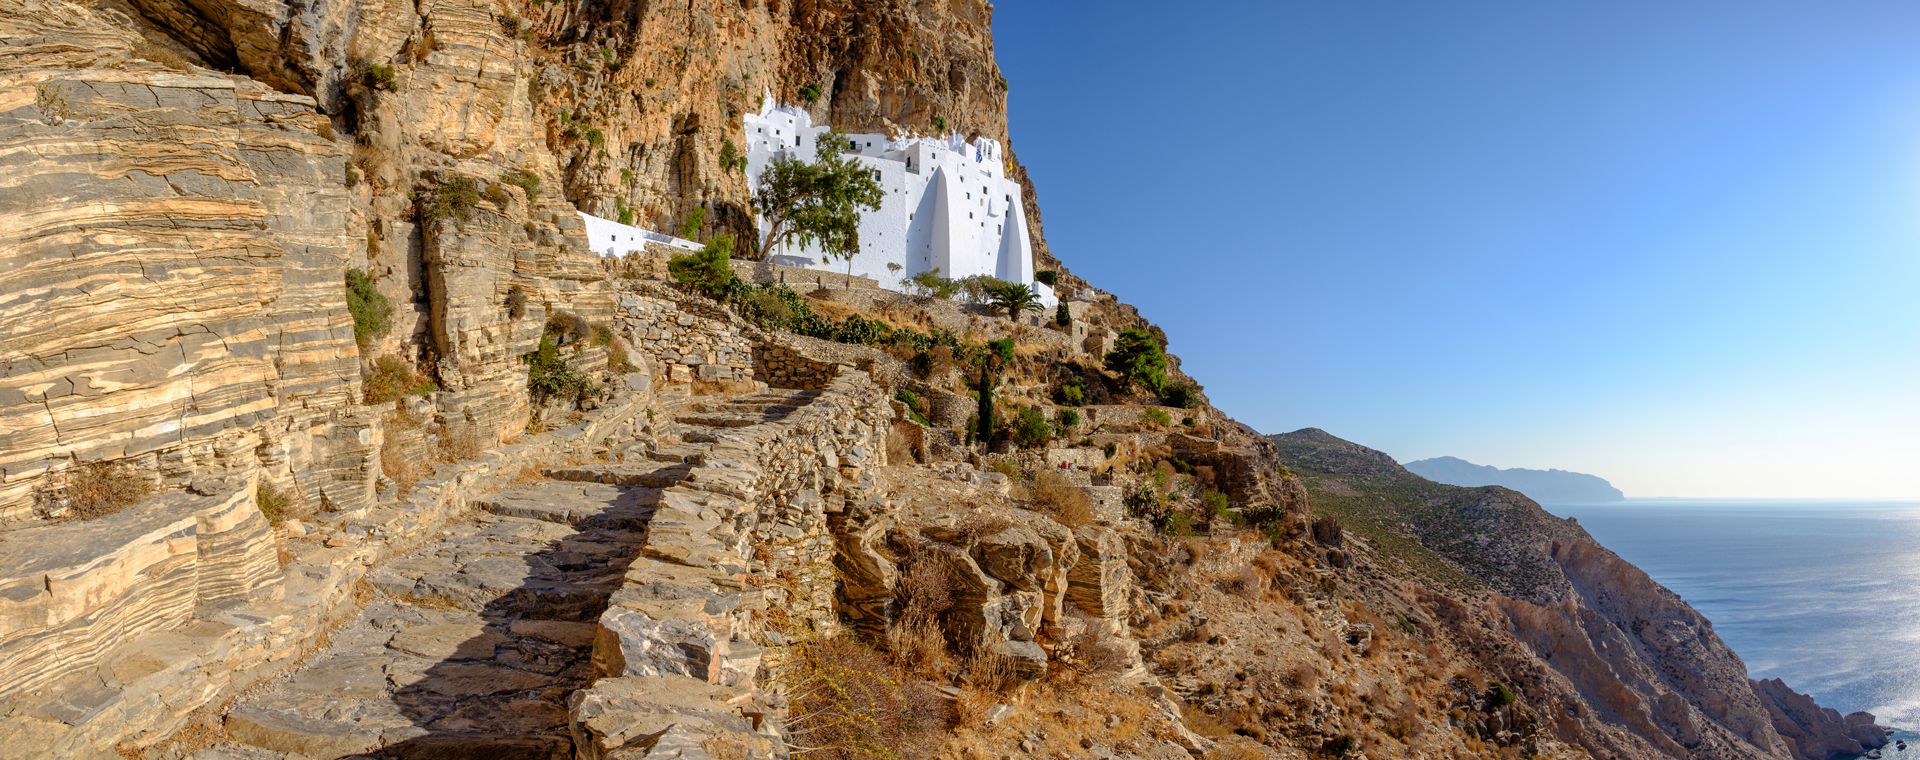 Amorgos: panorama of the monastery of Panagia Chozoviotissa